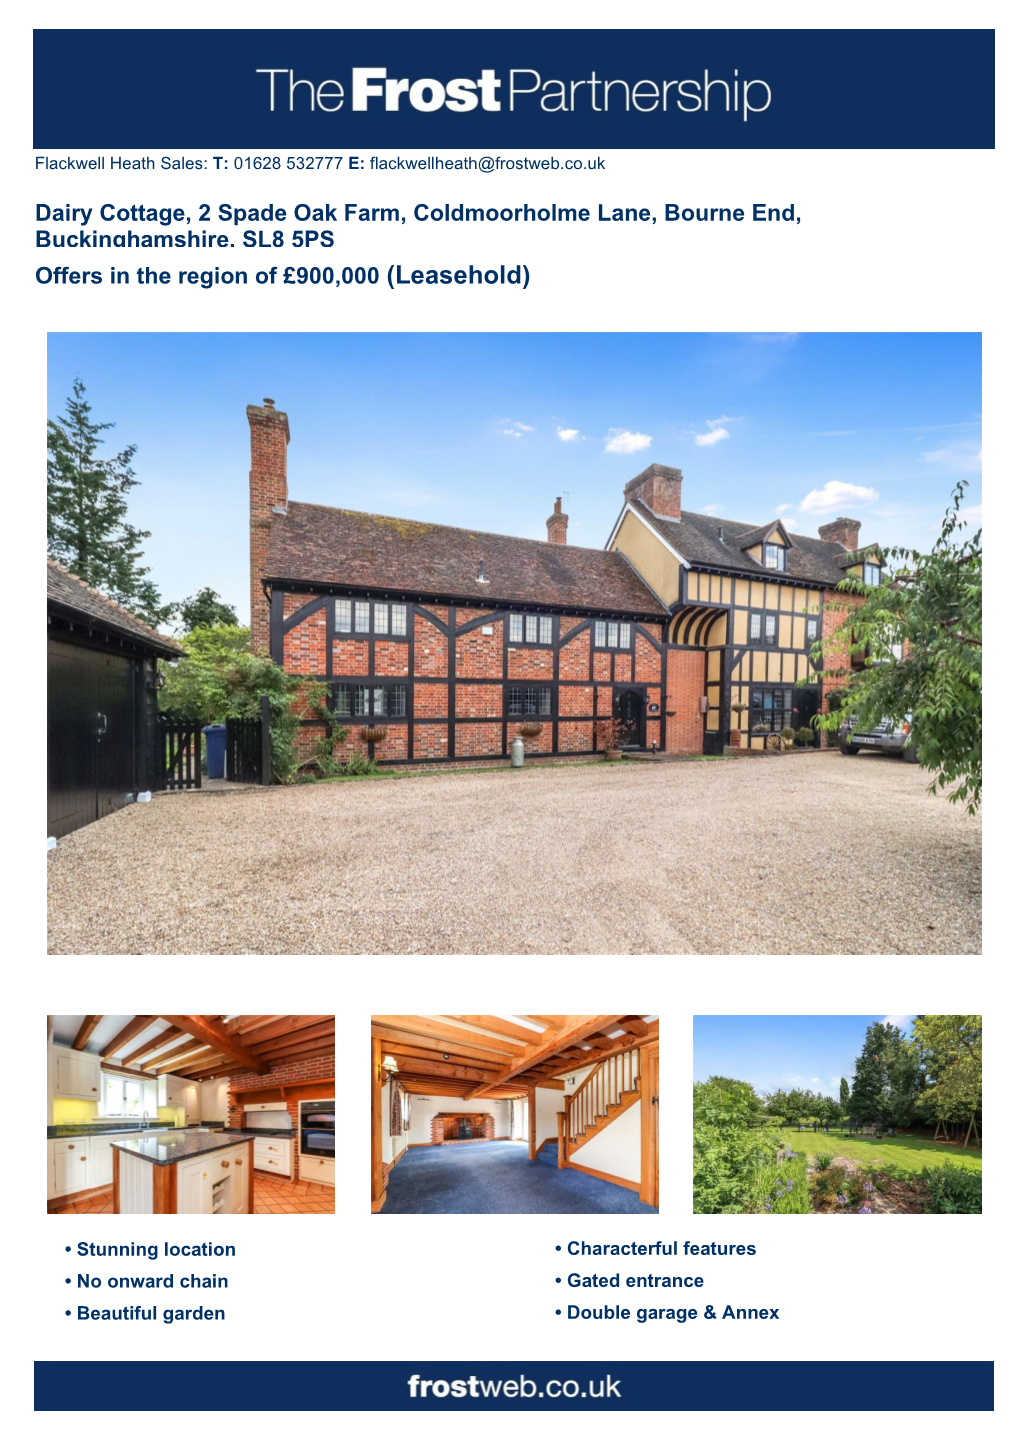 Dairy Cottage, 2 Spade Oak Farm, Coldmoorholme Lane, Bourne End, Buckinghamshire, SL8 5PS Offers in the Region of £900,000 (Leasehold)